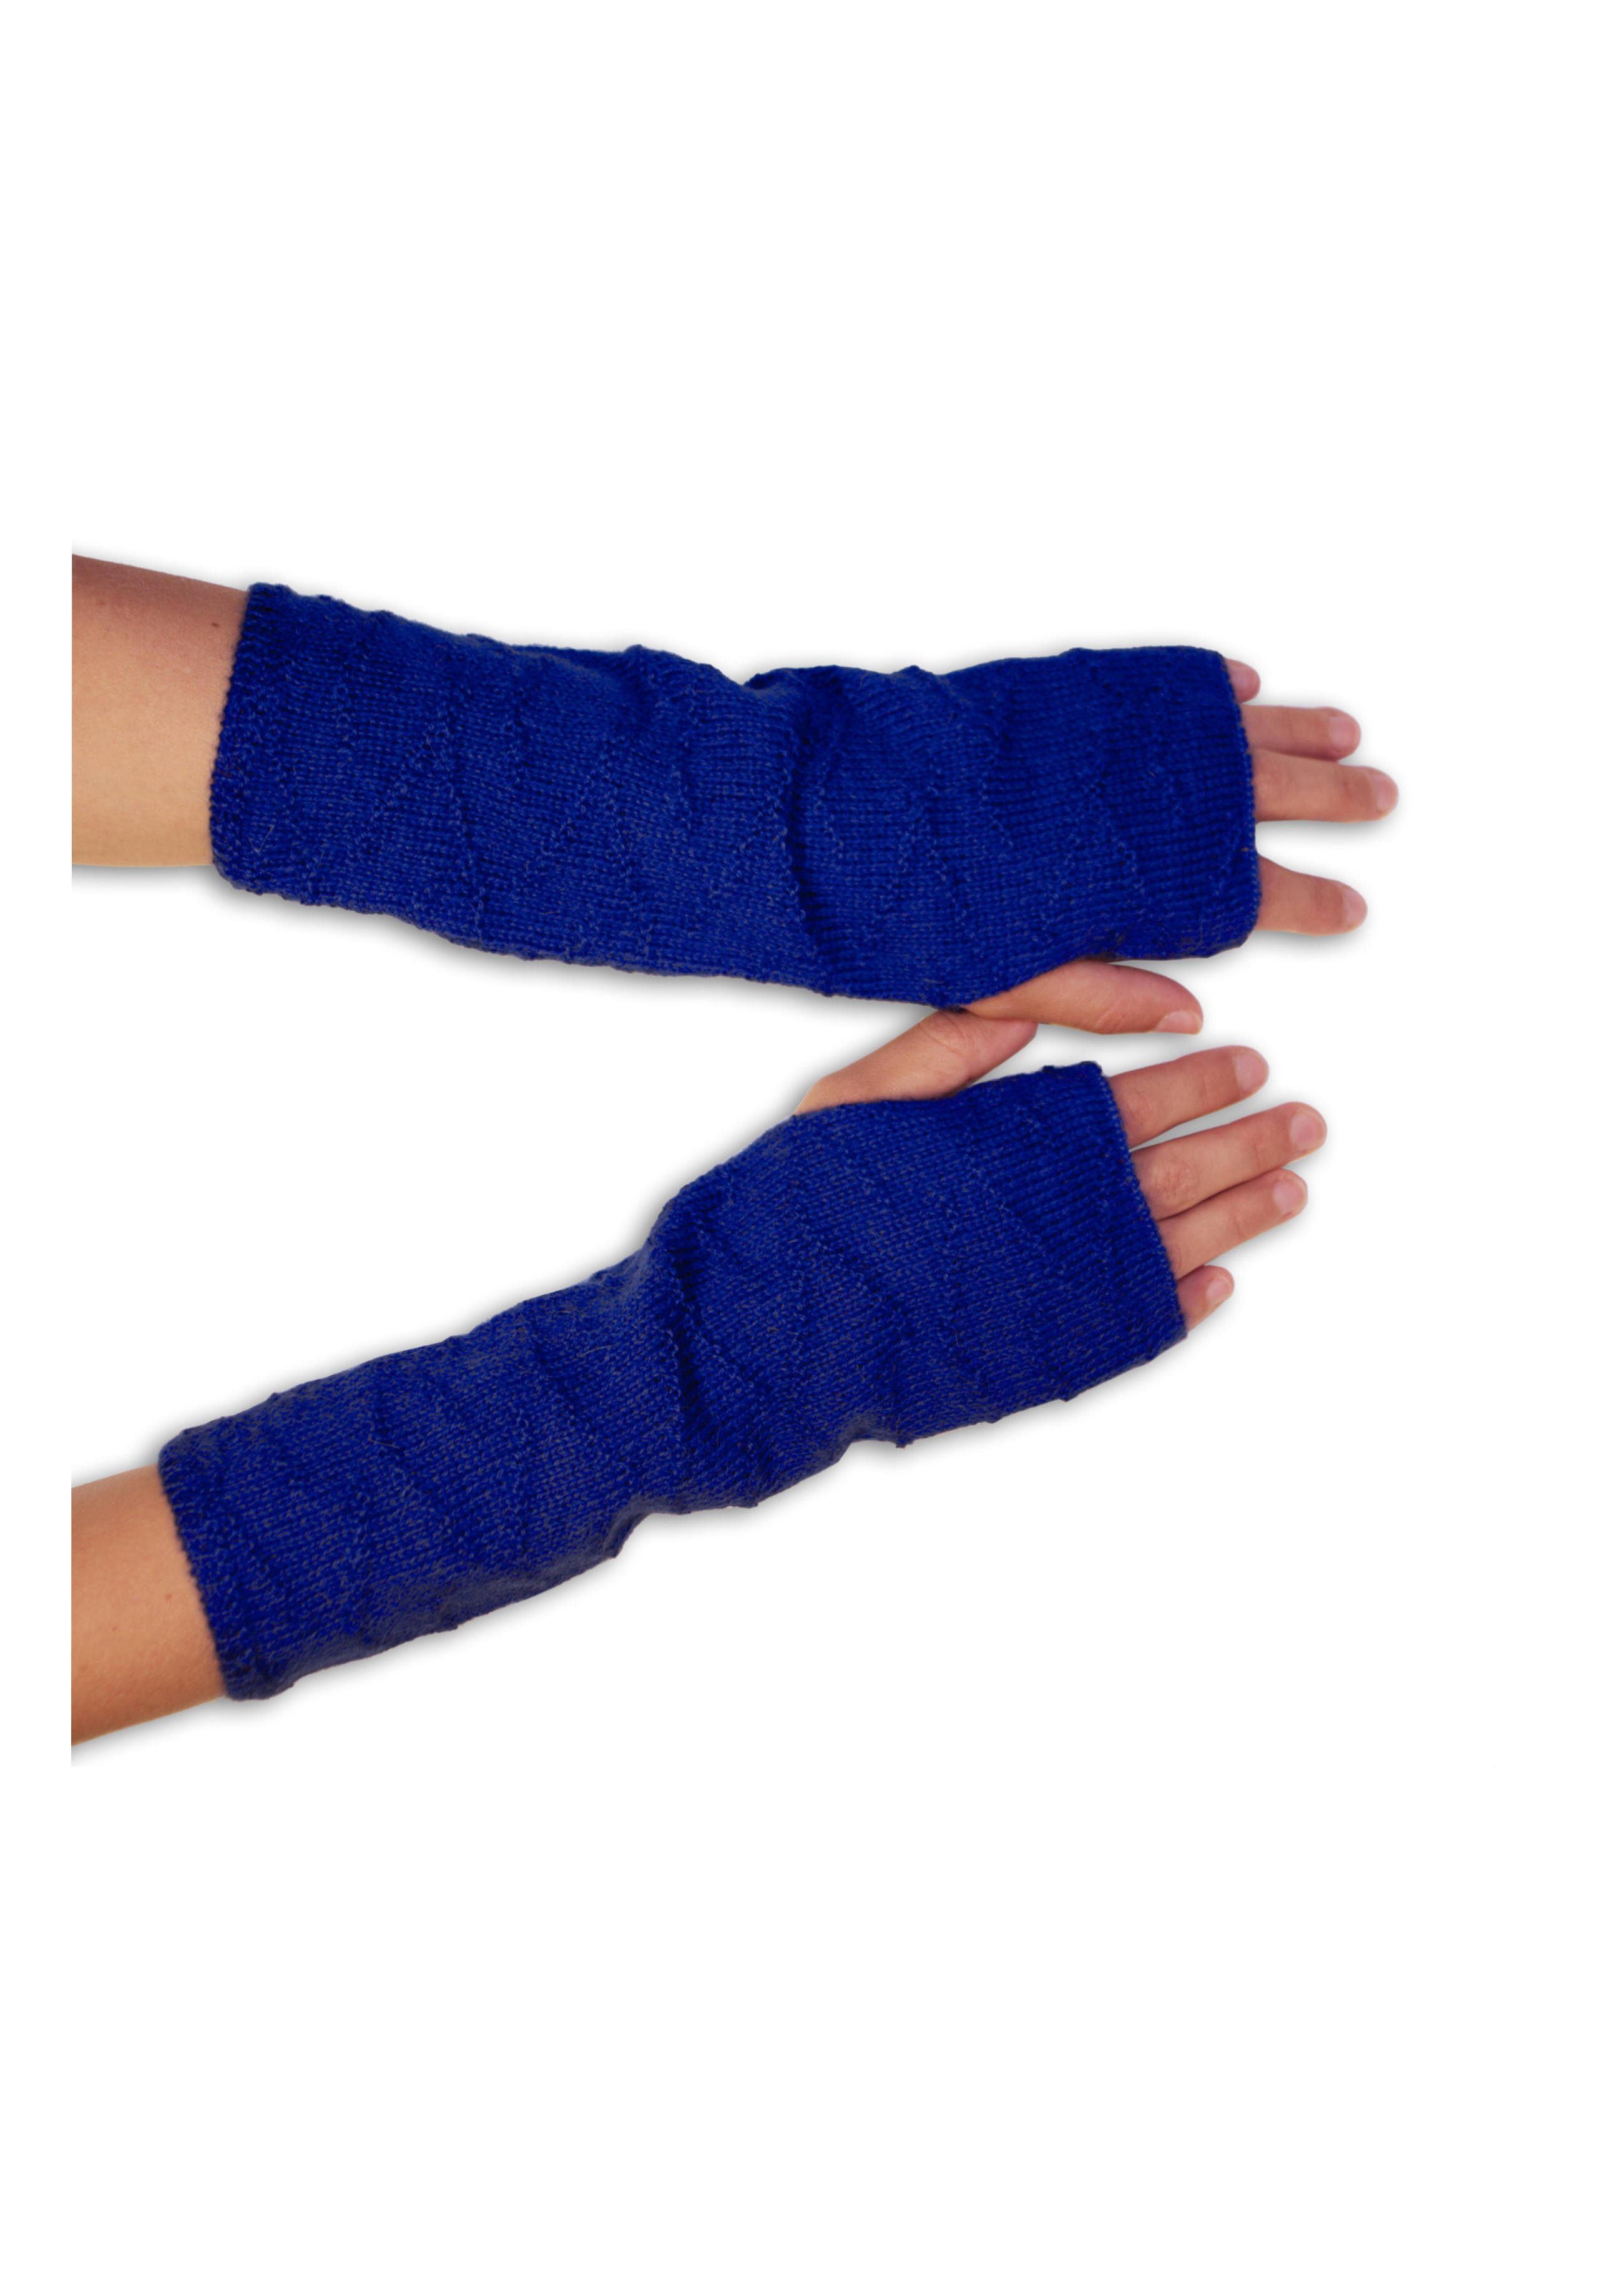 Gear 100% Armstulpen Alpaka Handstulpen Posh Alpakawolle blau